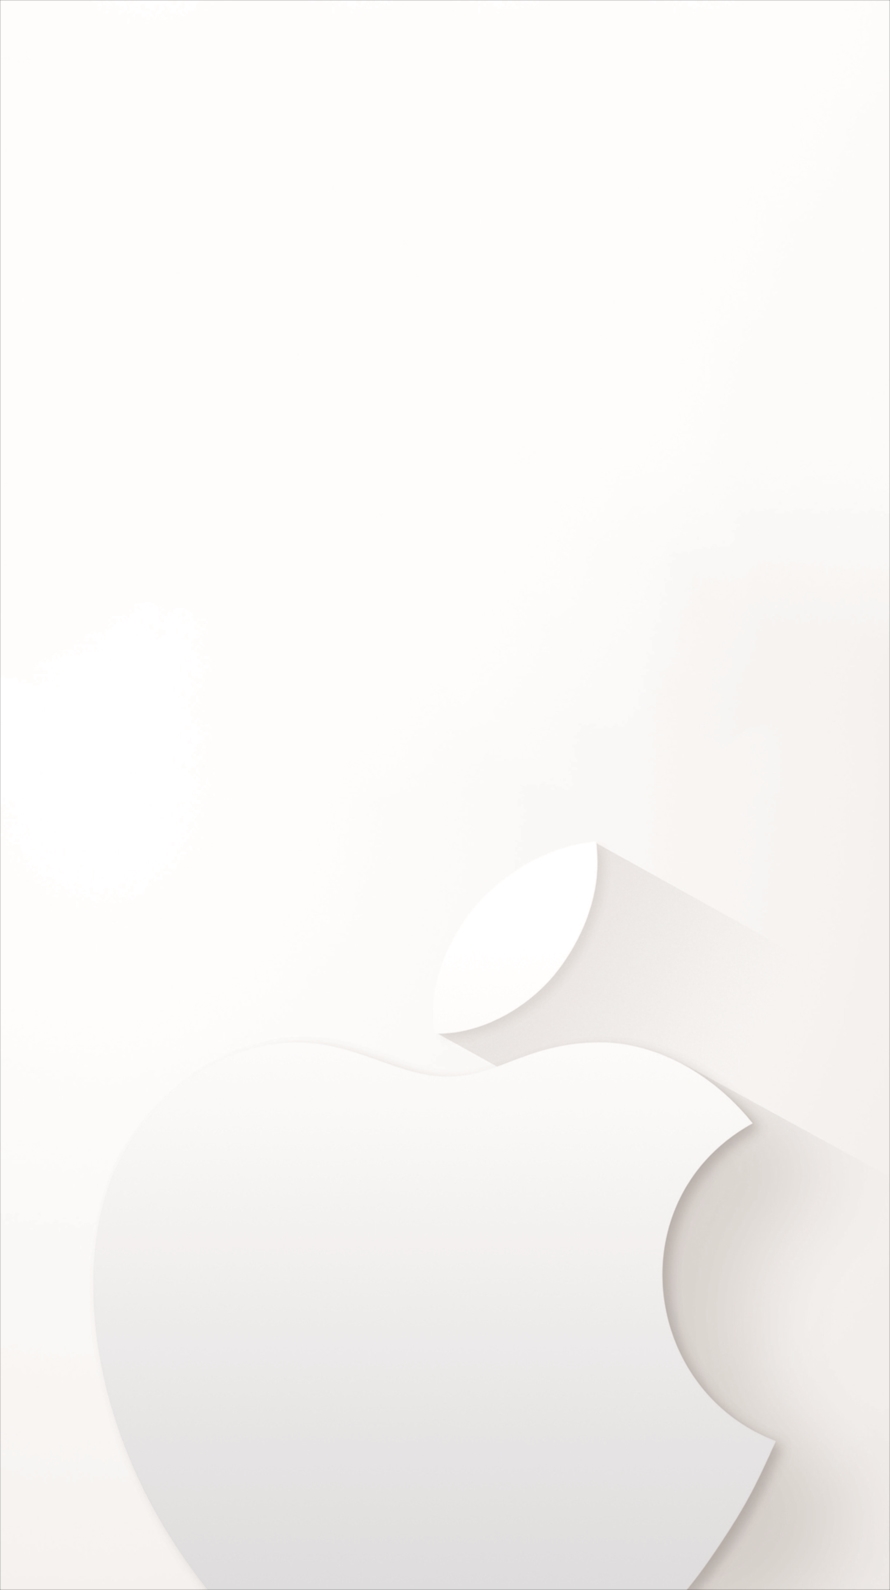 ミニマル ホワイト アップルロゴ iPhone6壁紙